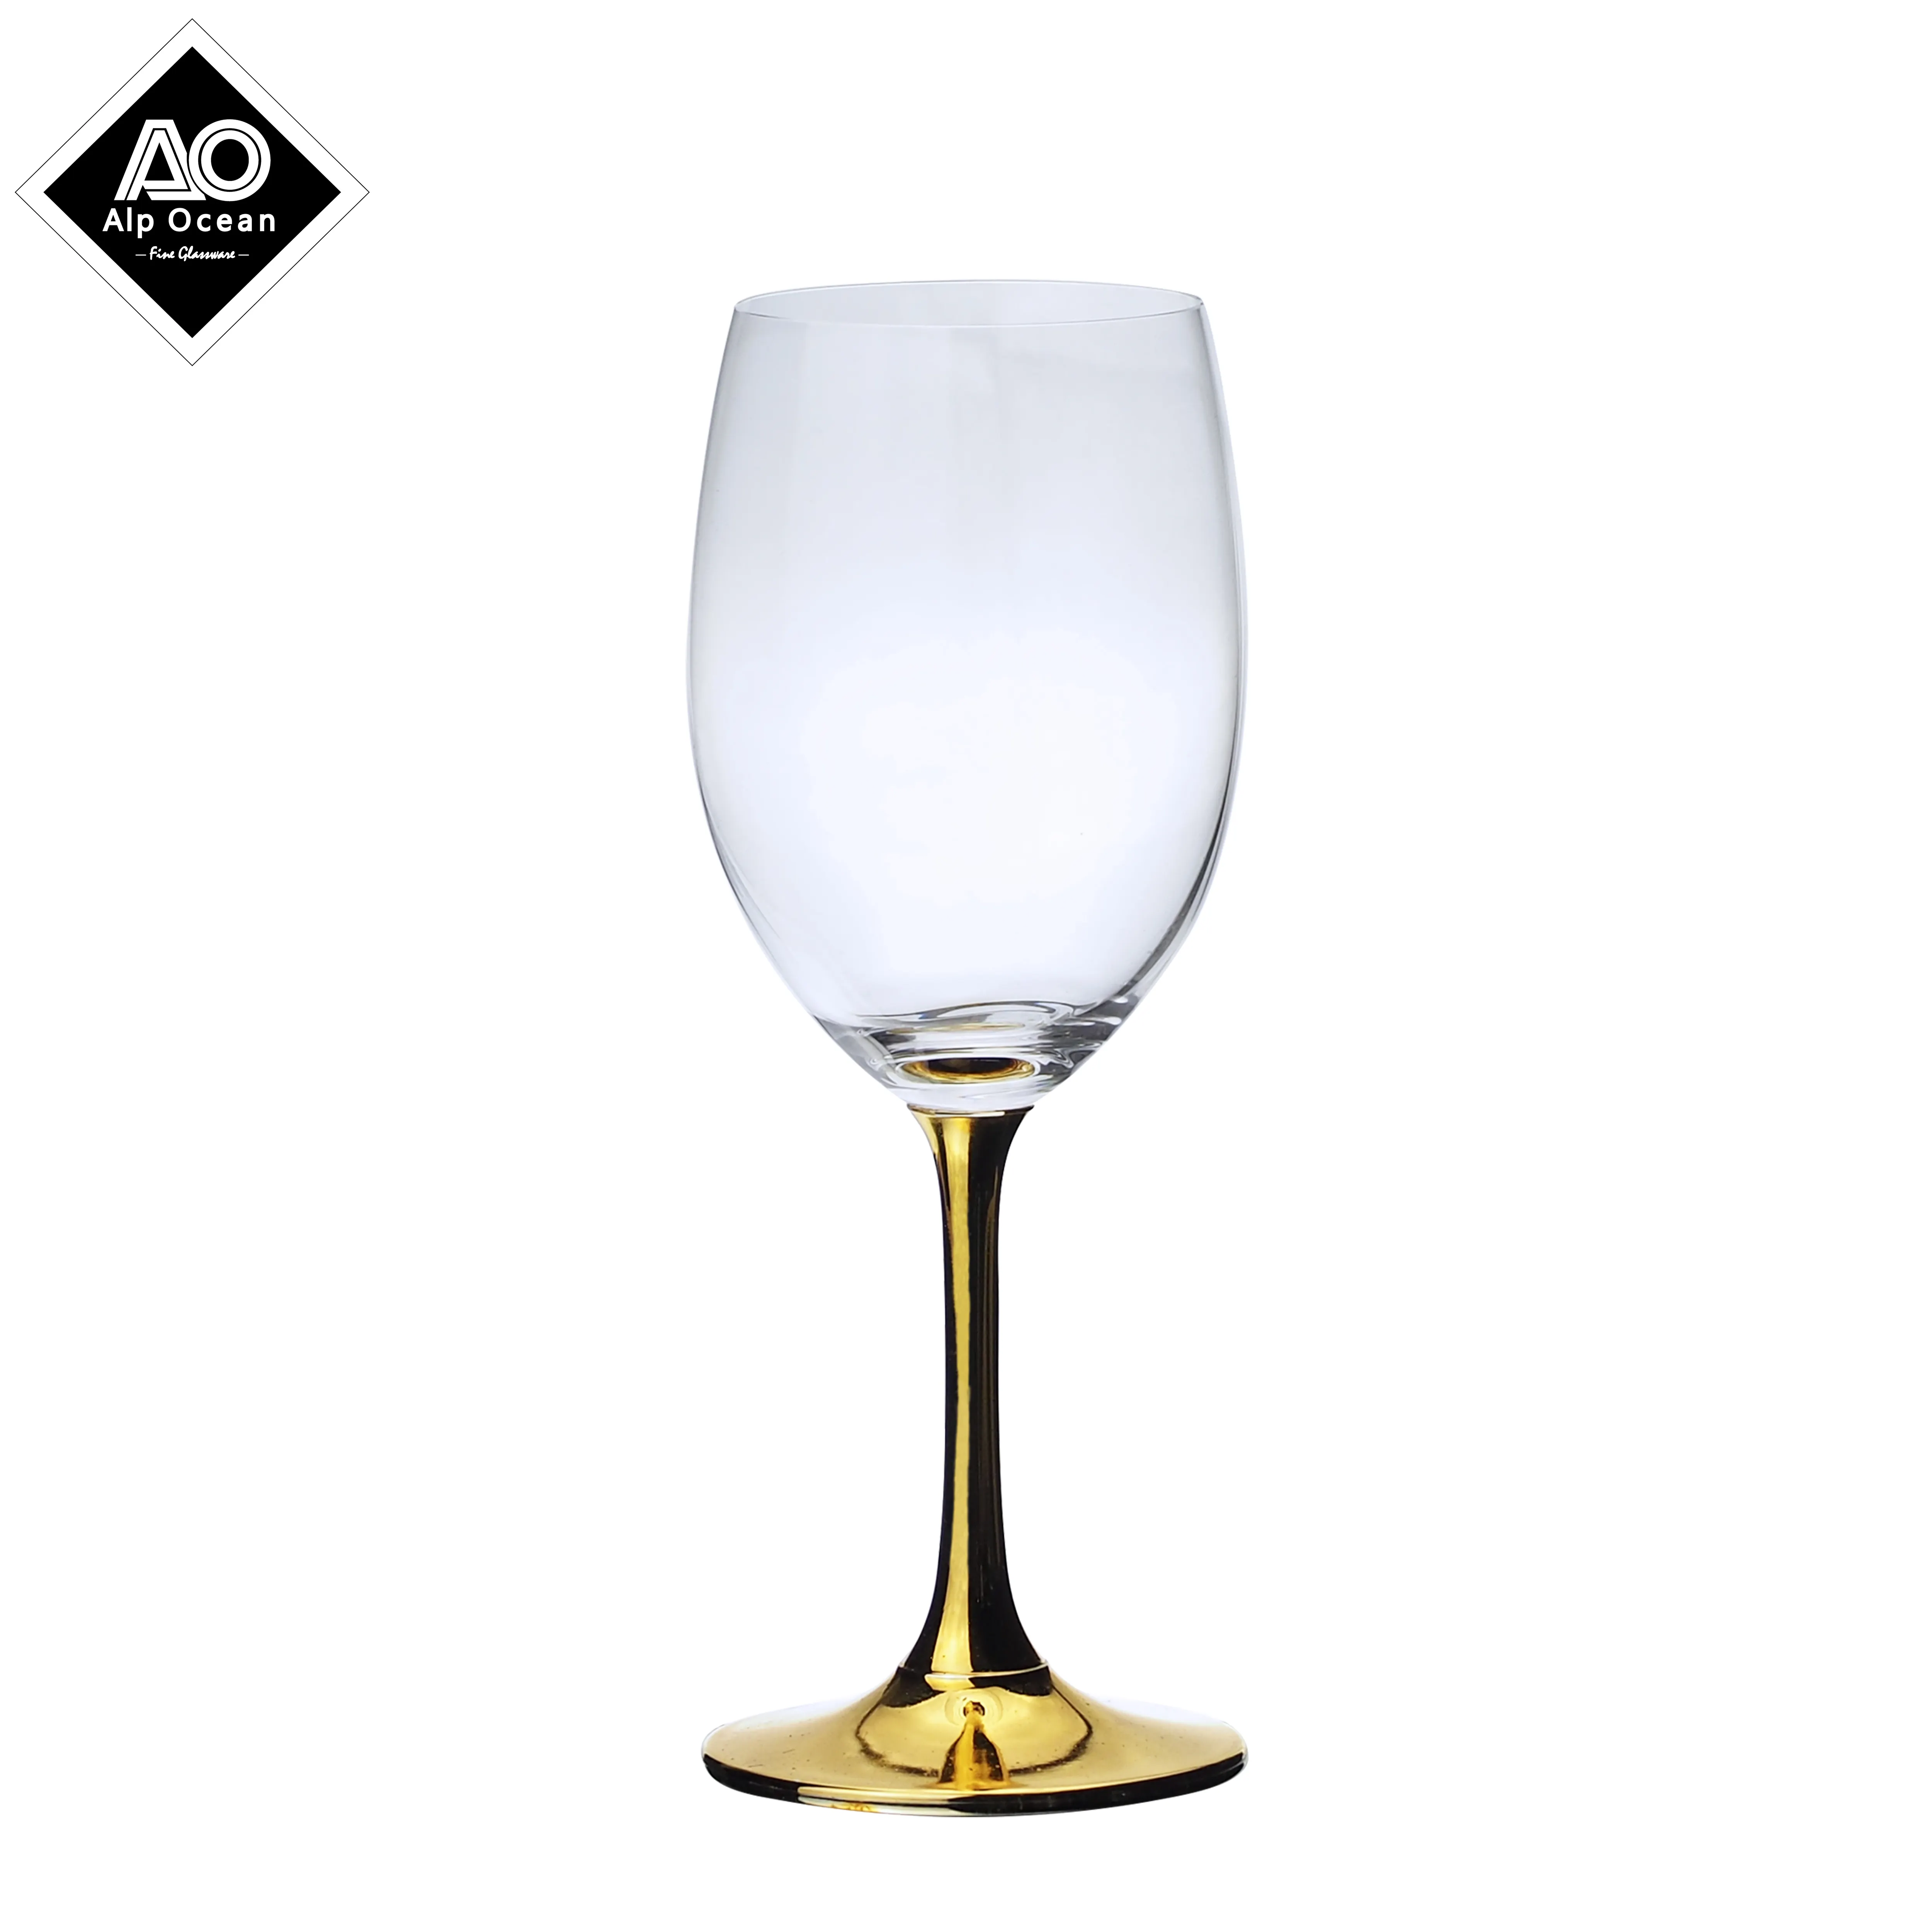 327ml i piedi sono bicchieri alti dorati, che possono essere utilizzati per vino rosso, champagne e adatti per il business della casa e del ristorante